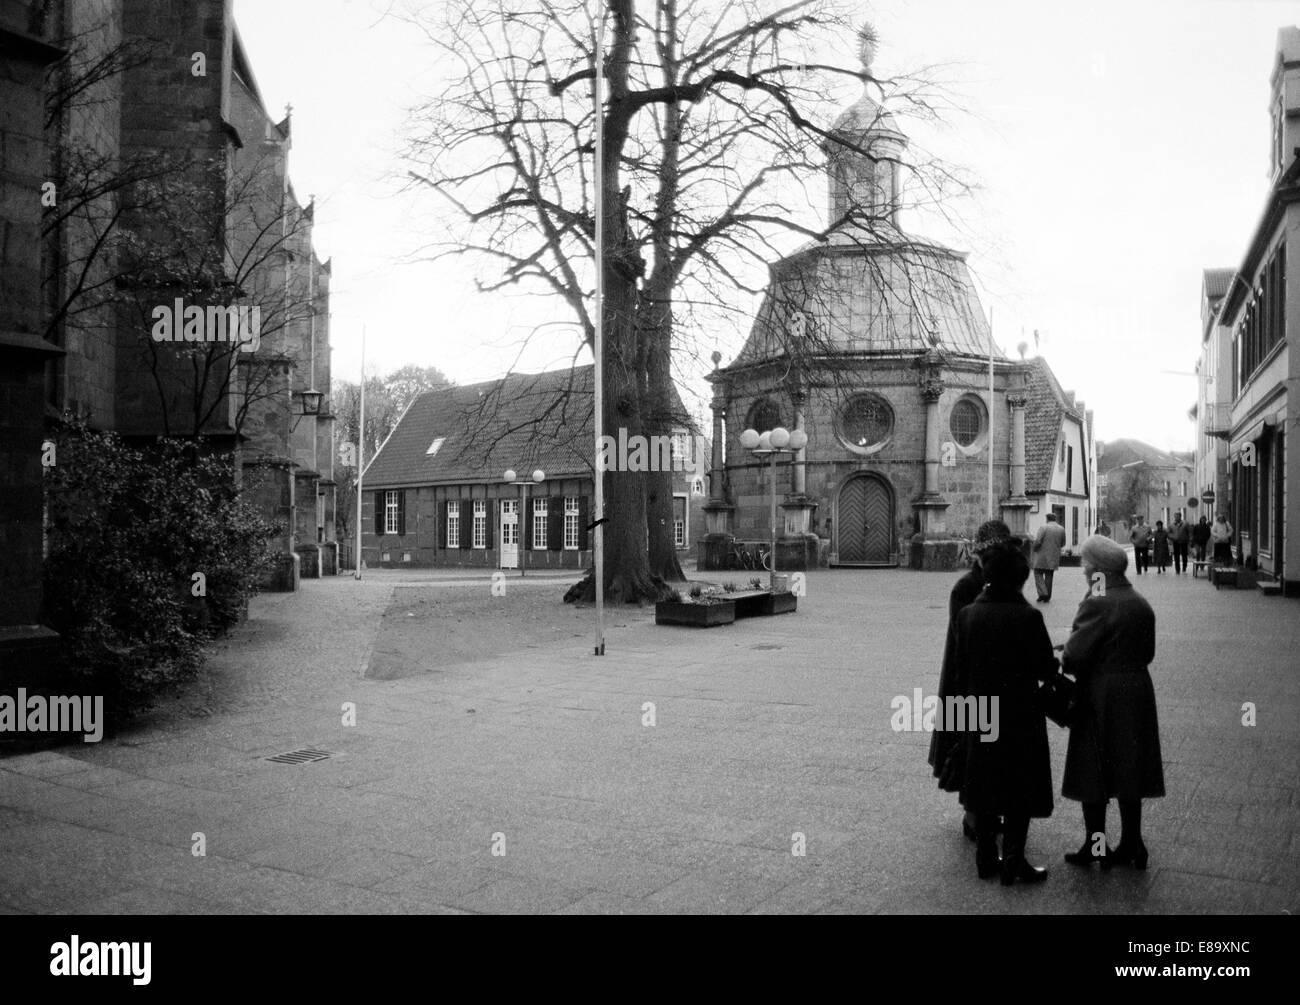 Achtziger Jahre, drei aeltere Frauen auf dem Kardinal-von-Galen-Platz vor der Marienkapelle im Gespraech, Barockkapelle, katholische Wallfahrtskapelle Stock Photo